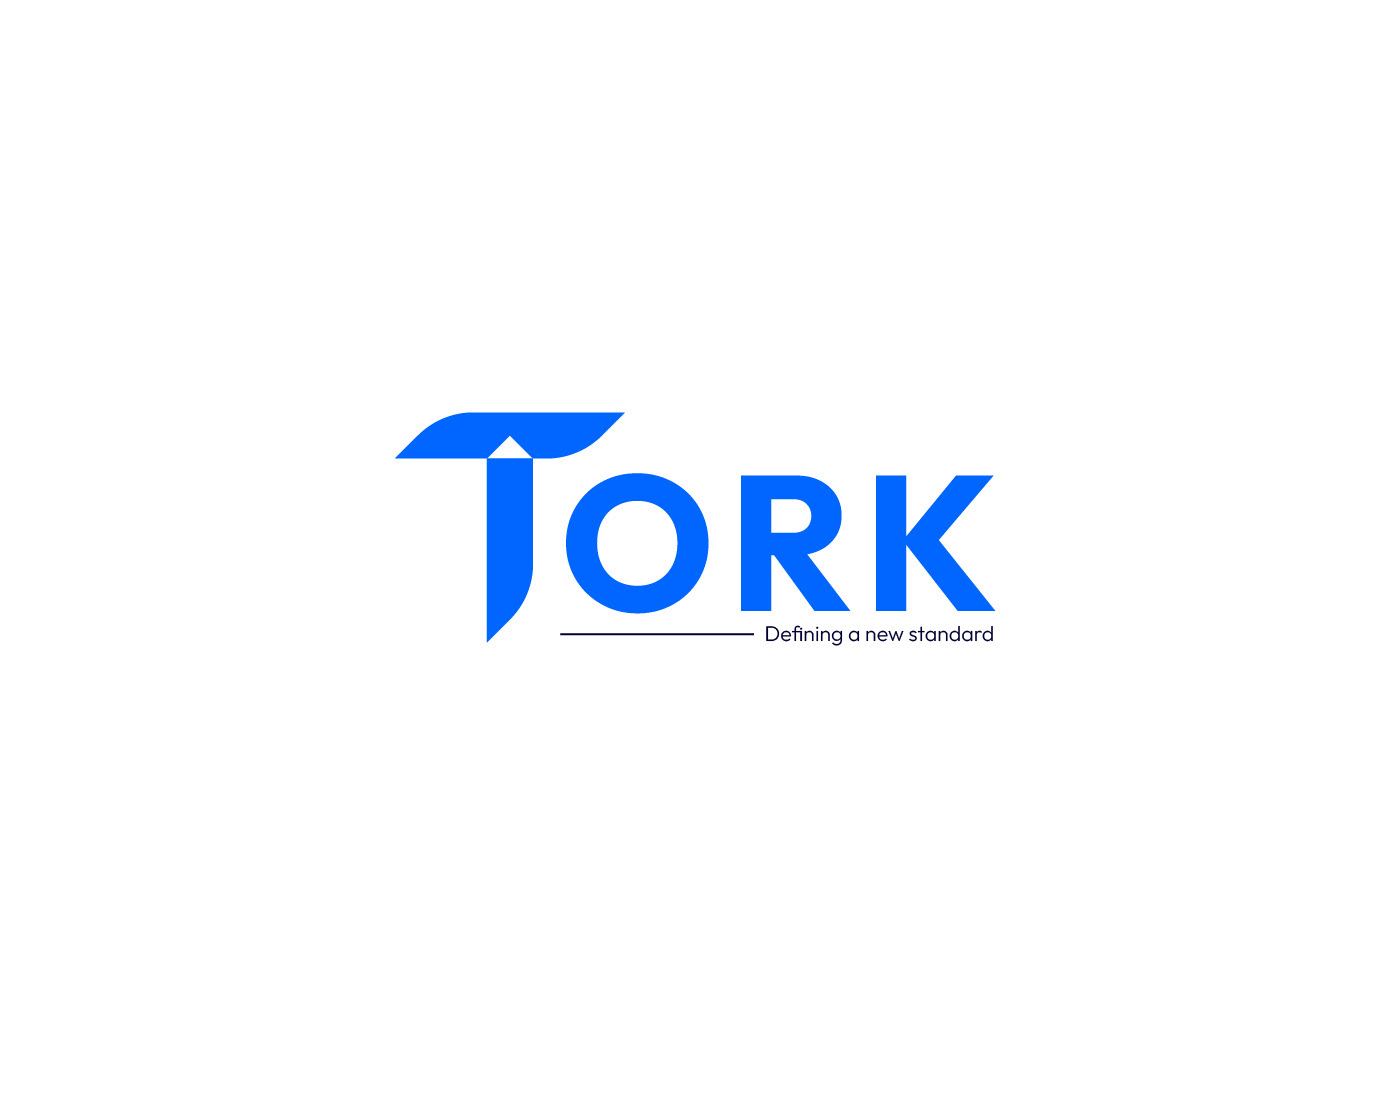 agency logo brand identity Logo Design T letter LOGO logo designer branding  logo visual identity tork logo tork logo full branding